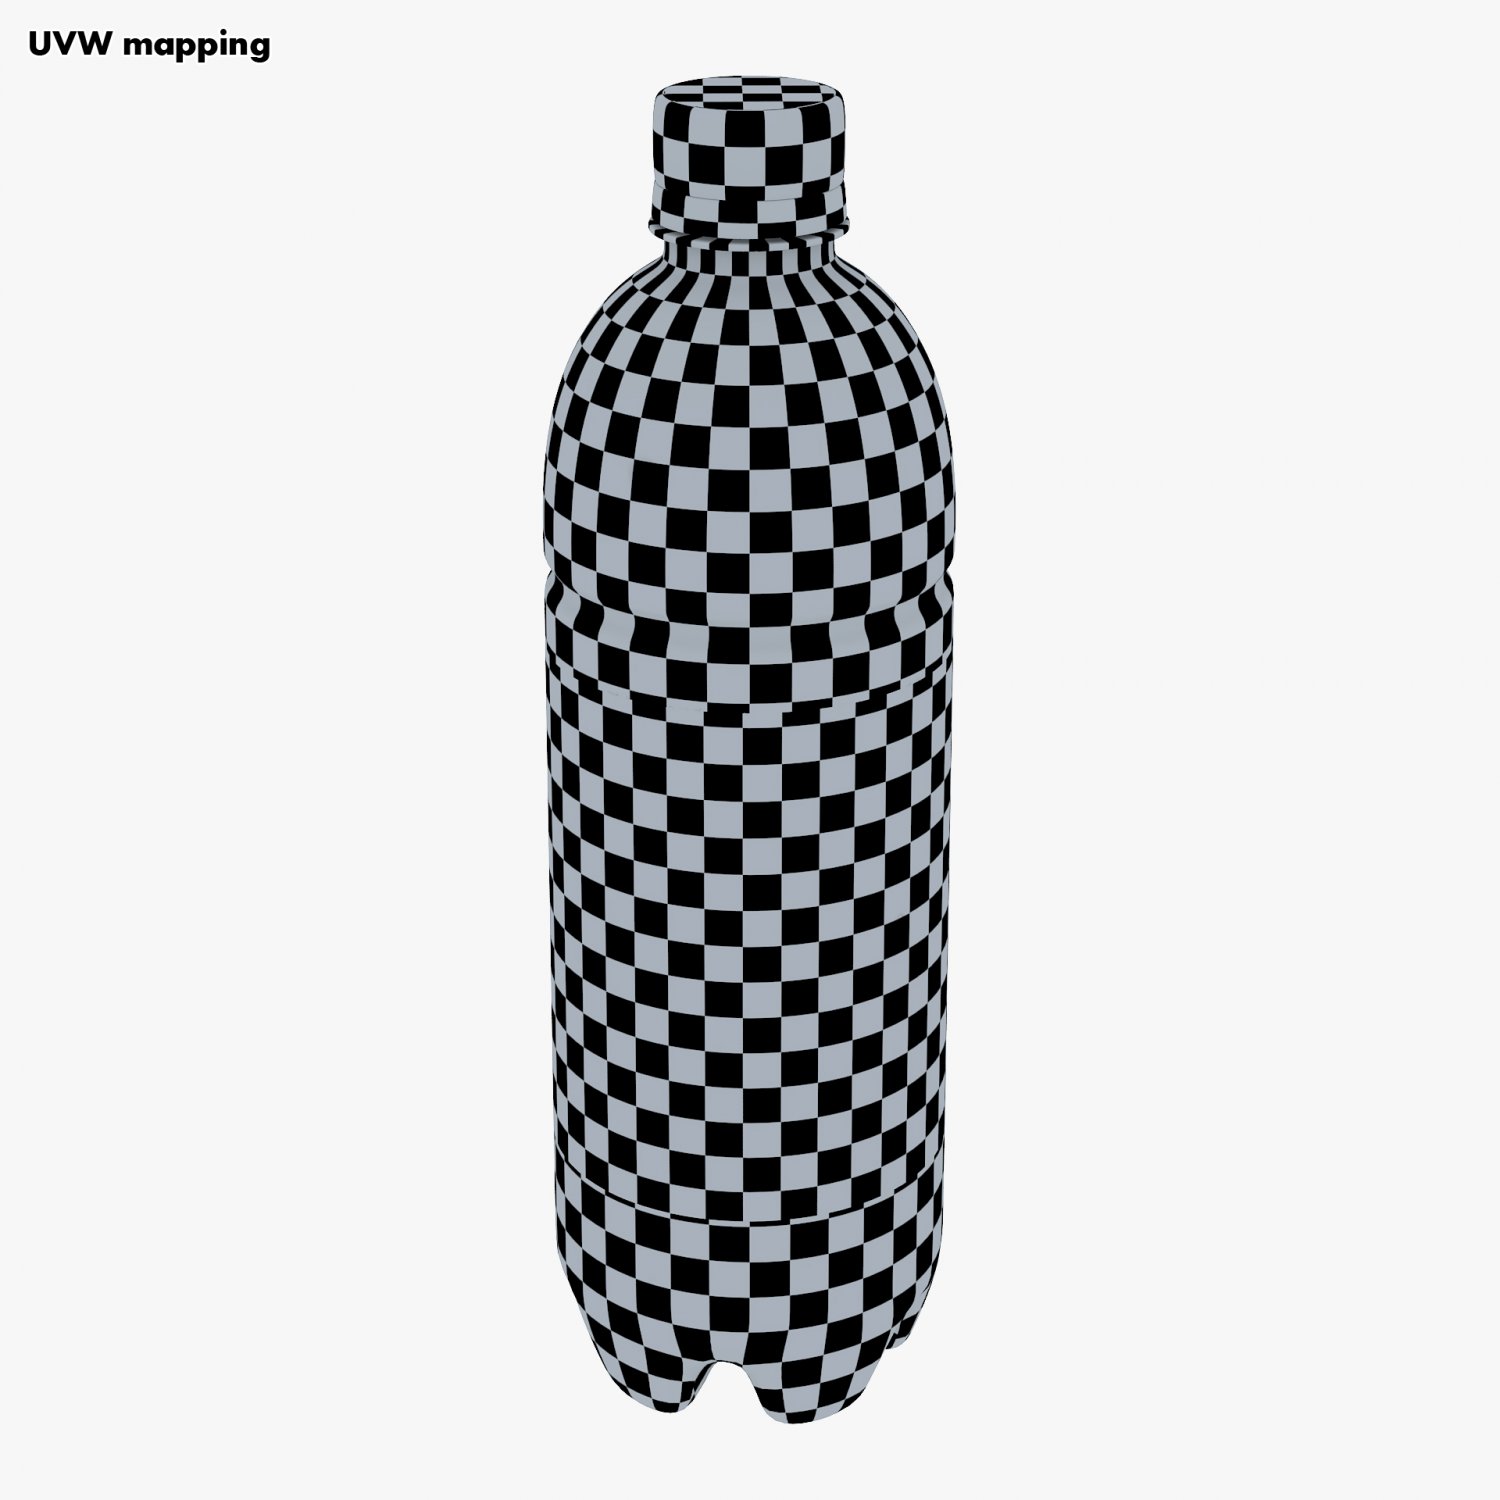 Vans Checkerboard Stainless Steel Water Bottle, Standard Lid